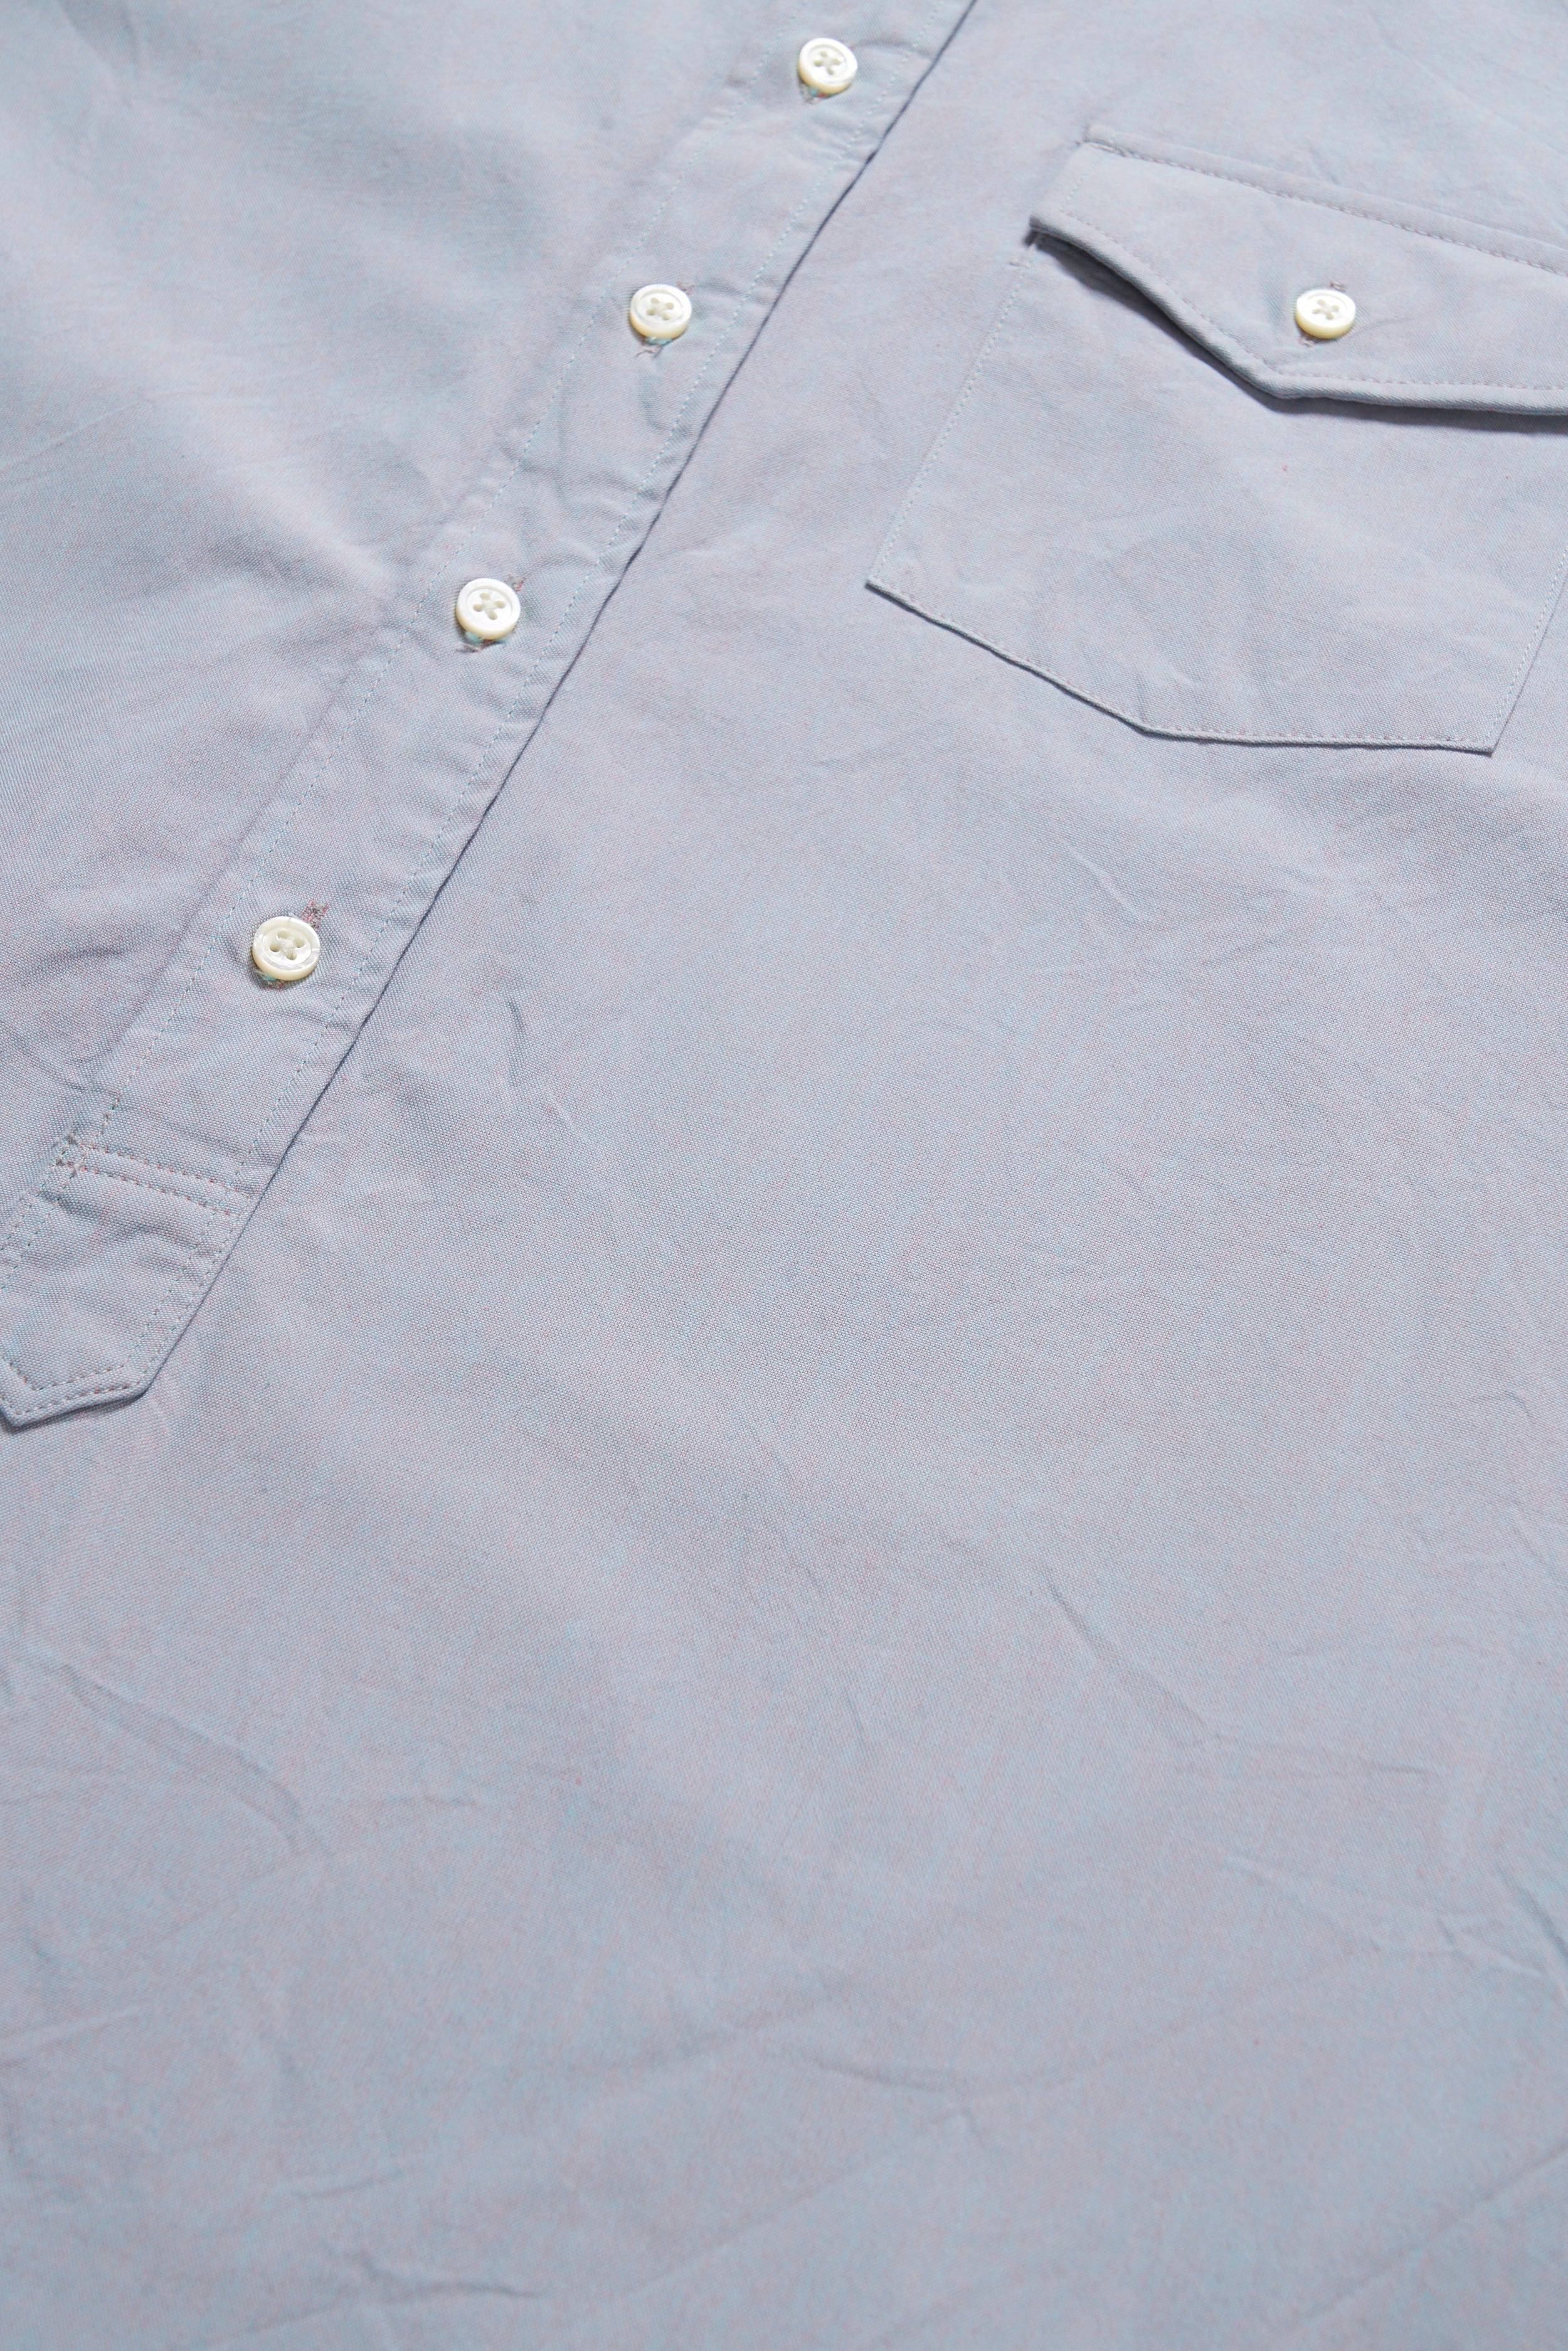 Ivy BD Shirt - Blue Cotton Iridescent